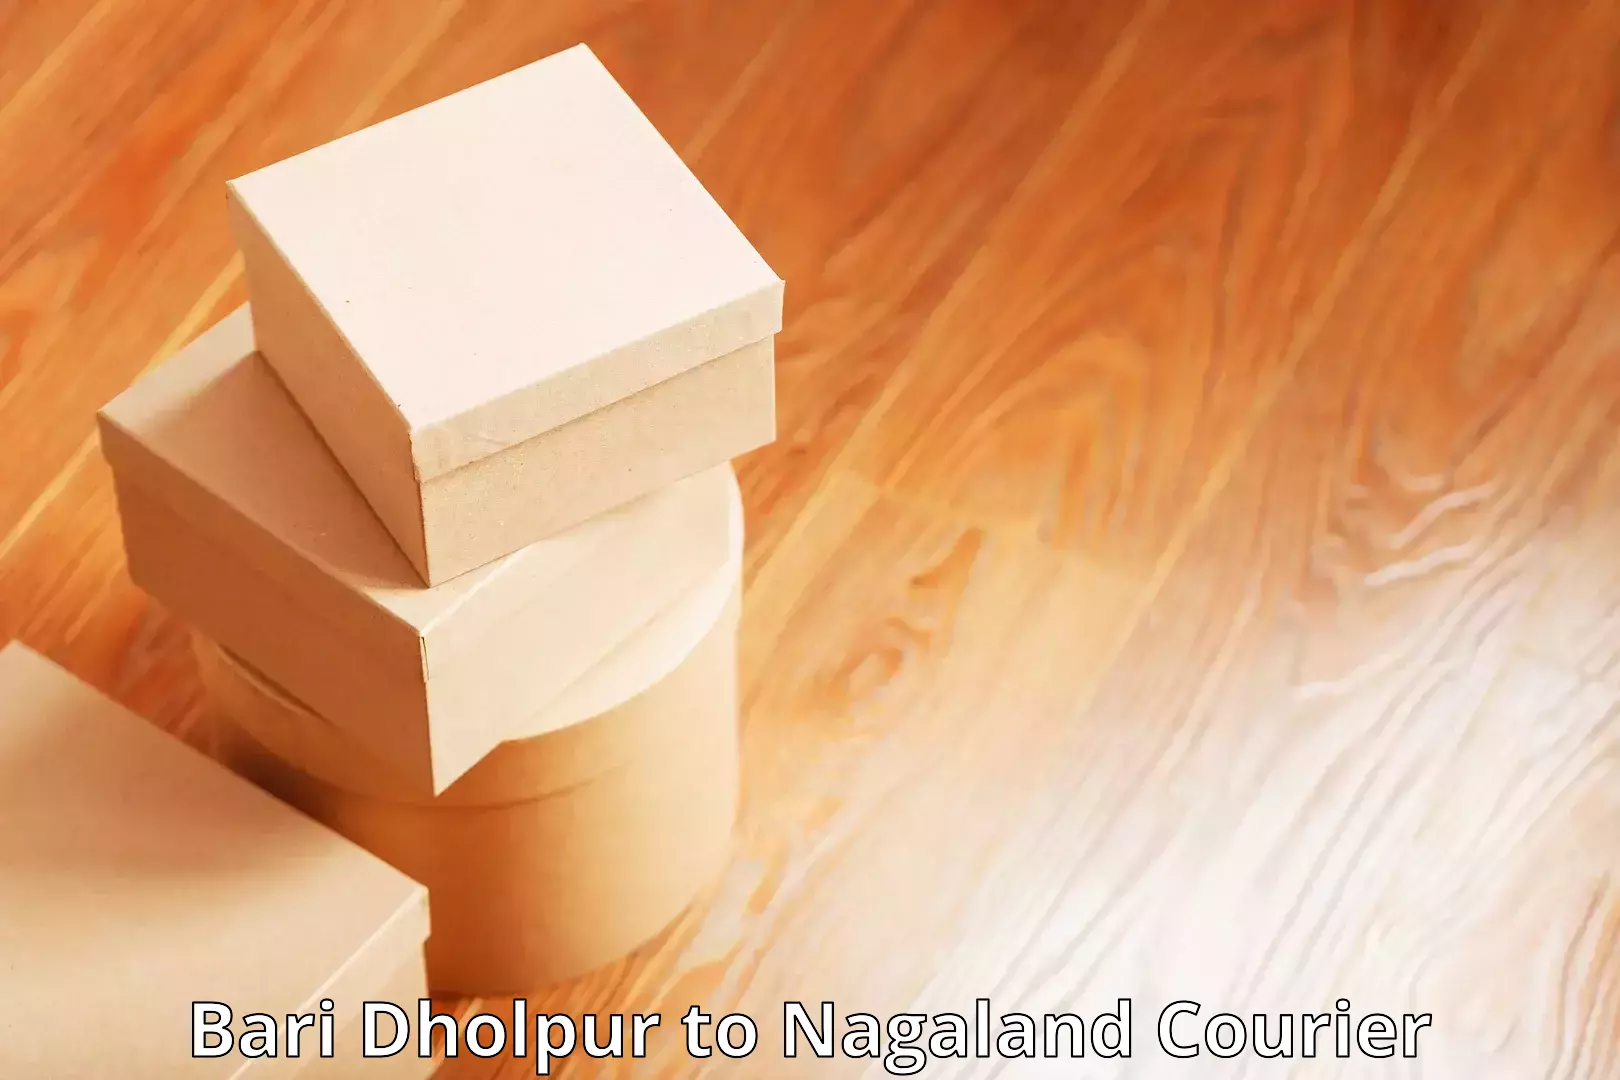 Advanced shipping technology Bari Dholpur to Nagaland